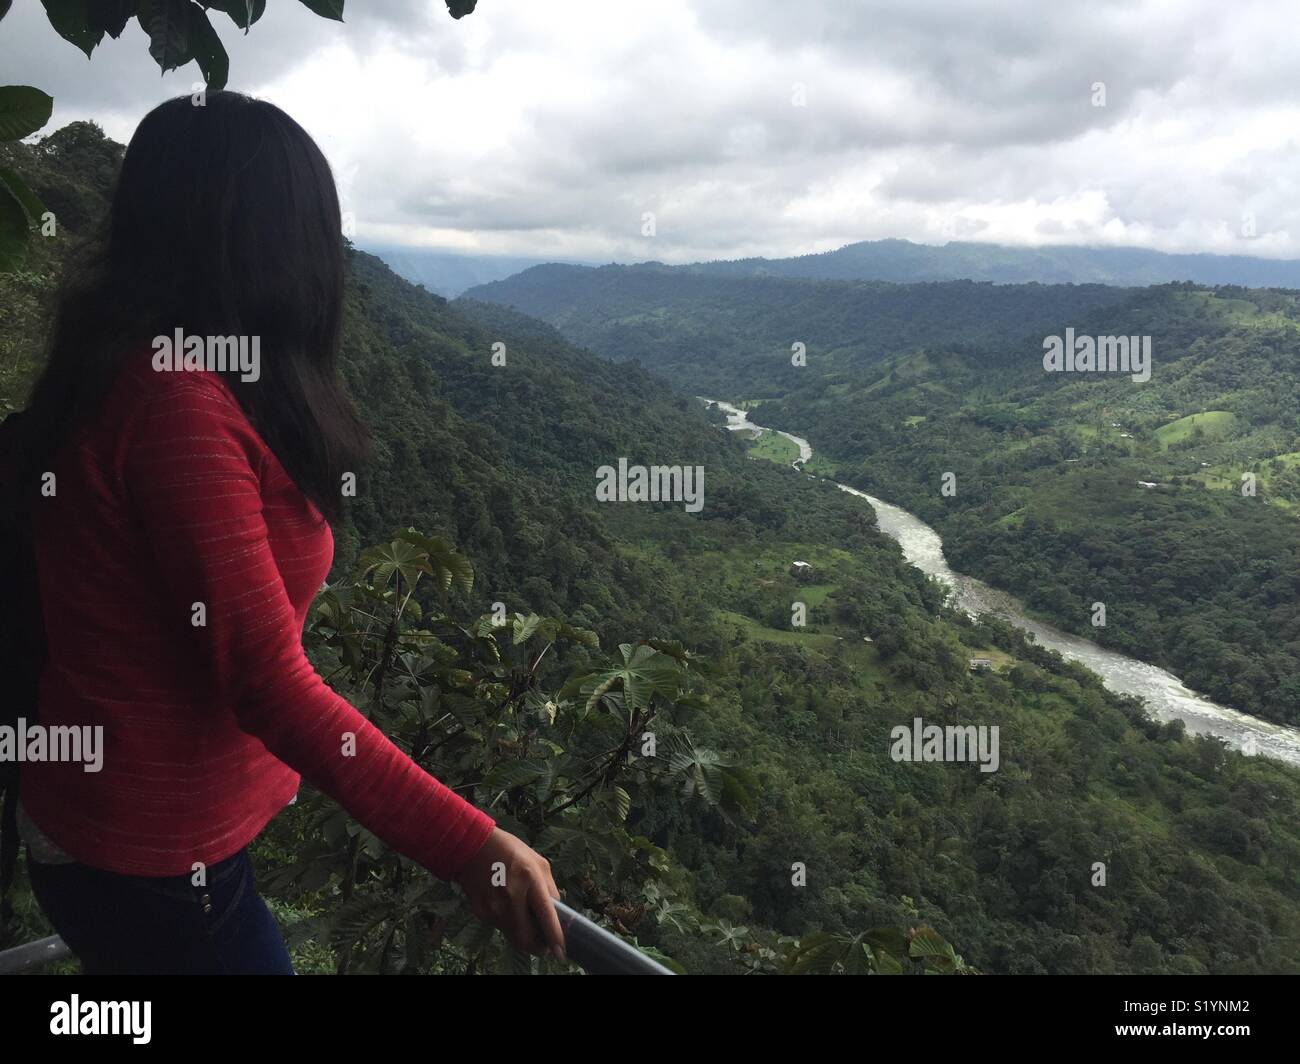 Mirando el valle del Río Blanco en Los Banco- Ecuador, bosque húmedo tropical Stock Photo